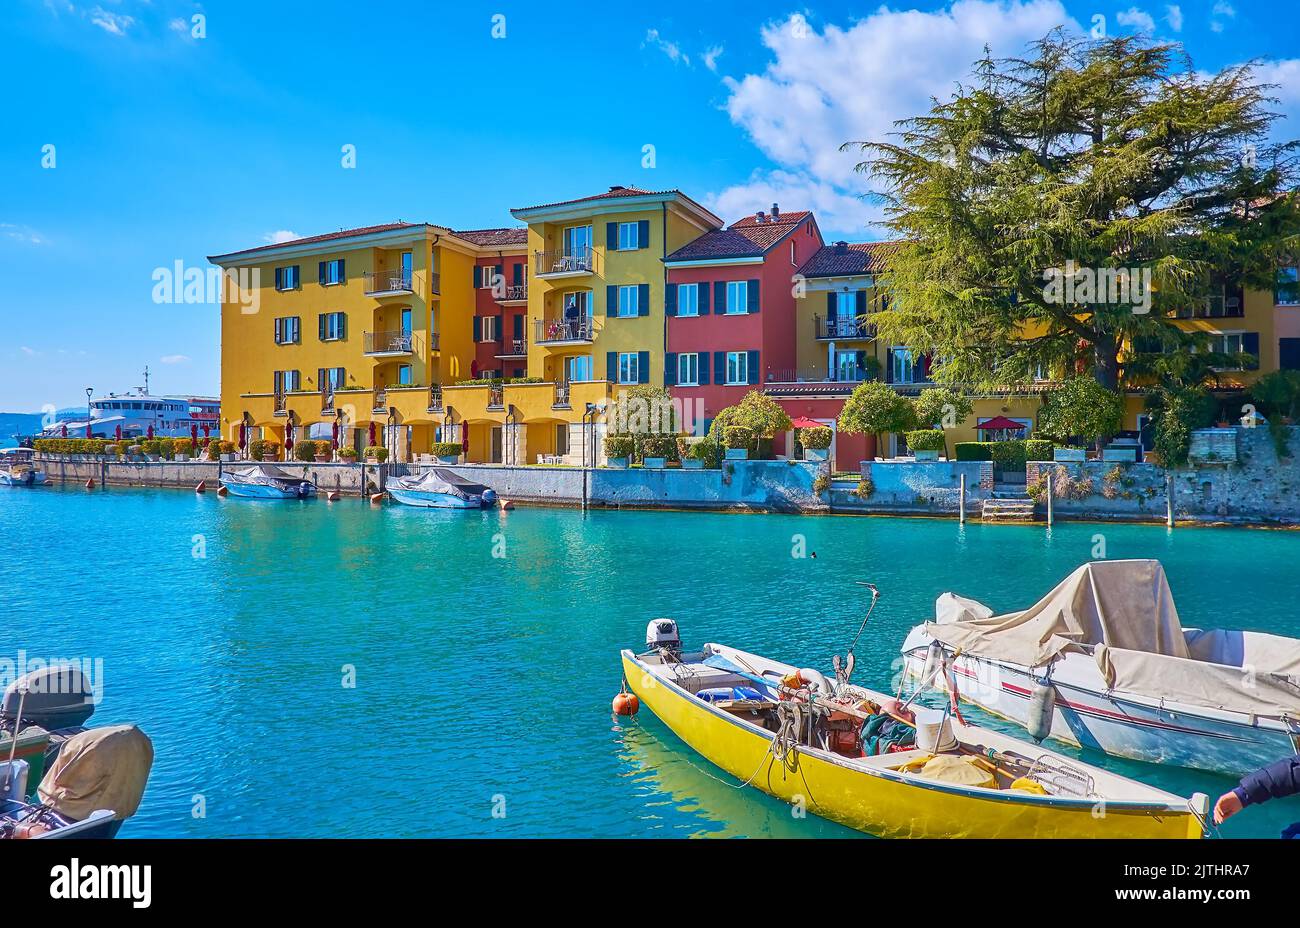 Die farbigen Fischer- und Touristenboote in der Marina von Sirmione, neben der Altstadt gelegen und gegenüber traditionellen Häusern und Villen, Lombardei, Italien Stockfoto